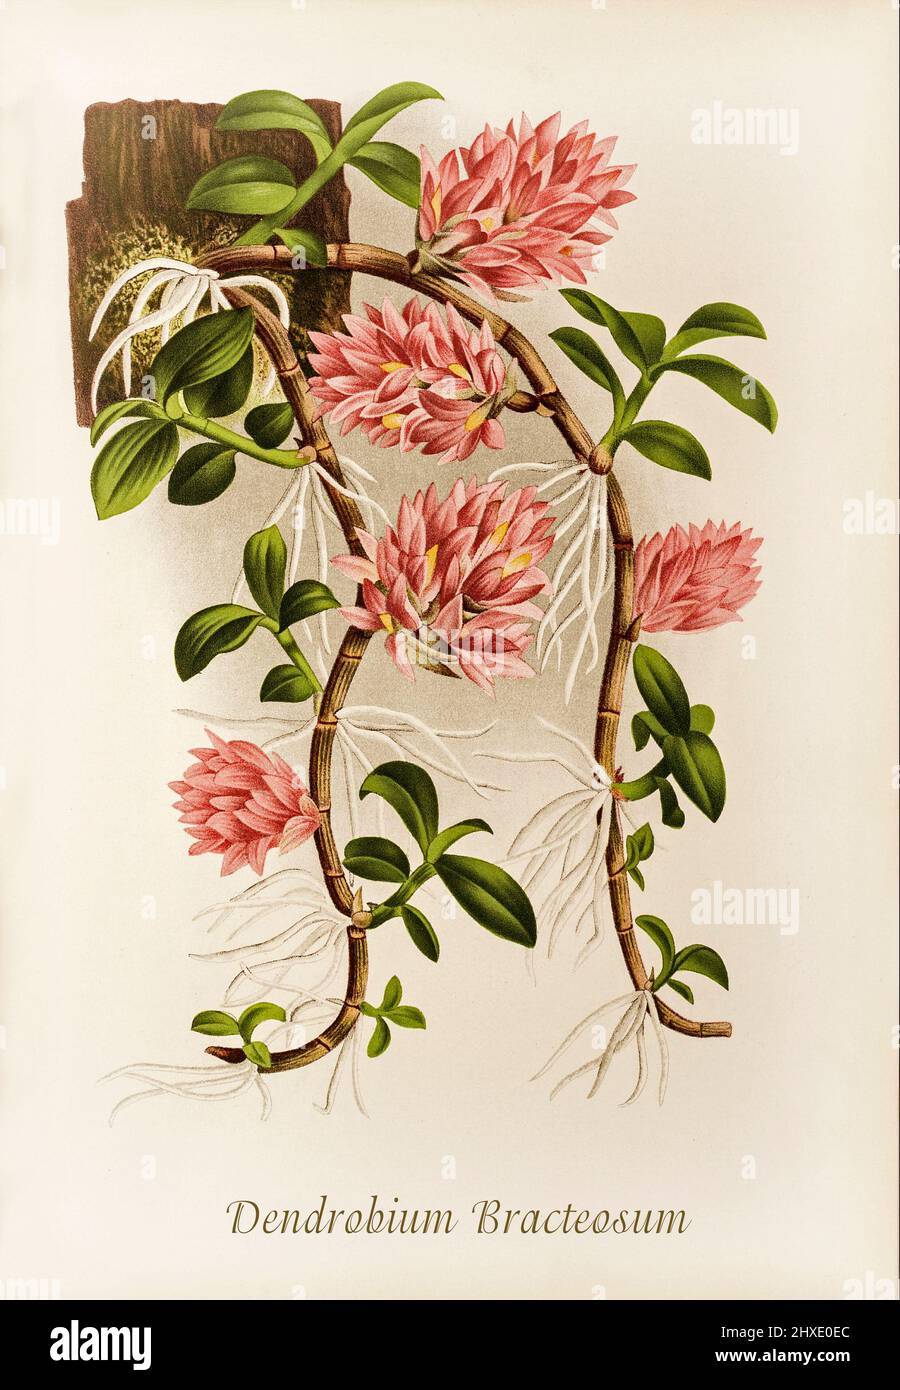 Dendrobium bracteosum (dendrobium braté) est une espèce d'orchidée. Il est originaire de la Nouvelle-Guinée, de l'archipel de Bismarck et de la province indonésienne de Maluku. D'Iconographie des Orchidées, un magazine d'illustrations botaniques publié par Jean Jules Linden (1817-1898) était un botaniste, explorateur et horticulteur belge spécialisé dans les orchidées. Banque D'Images